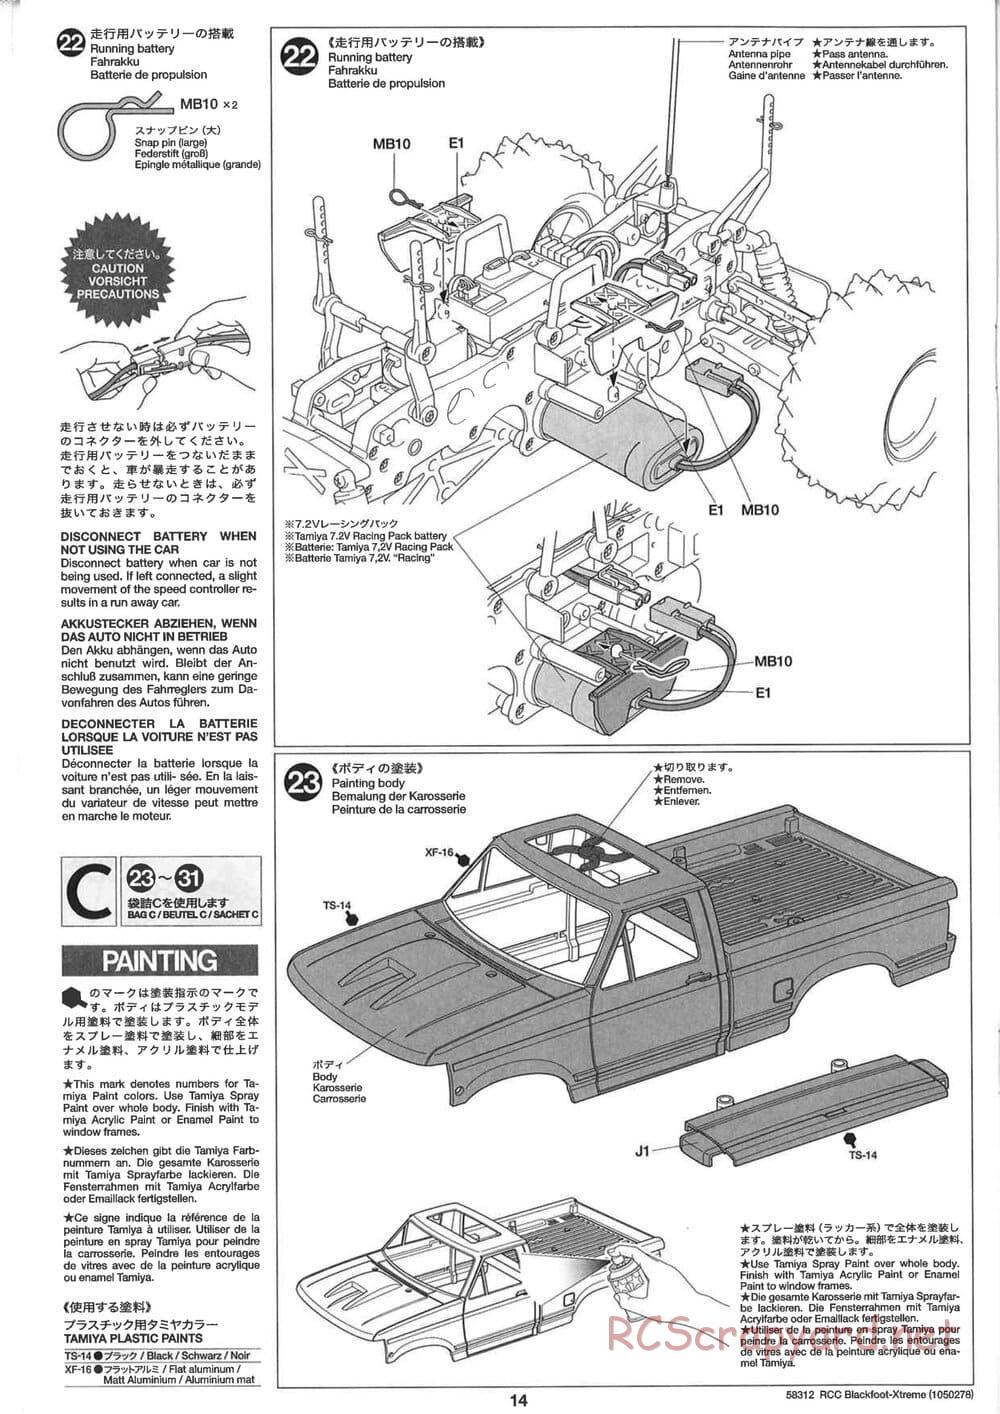 Tamiya - Blackfoot Xtreme - WT-01 Chassis - Manual - Page 14